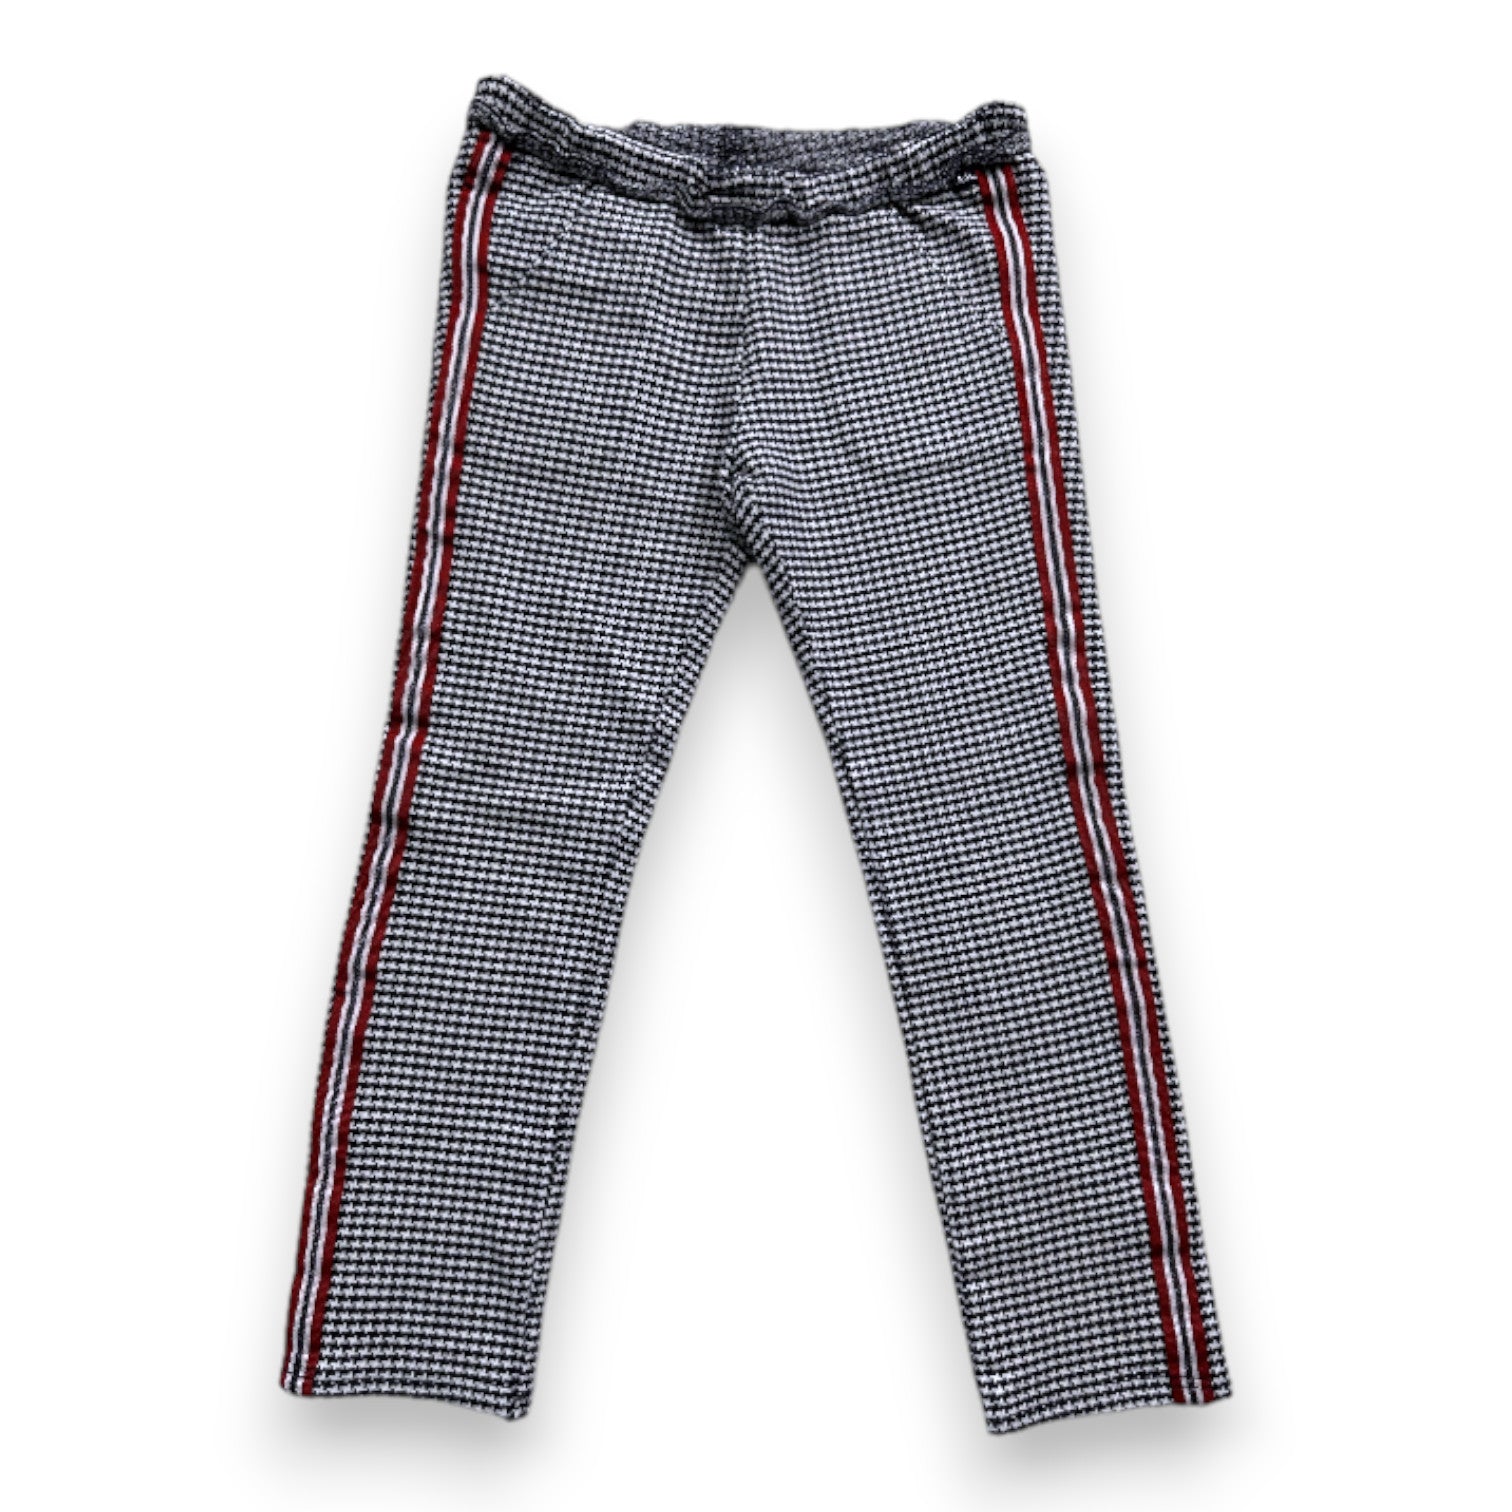 IKKS - Pantalon bleu et blanc avec détails rouges - 4 ans